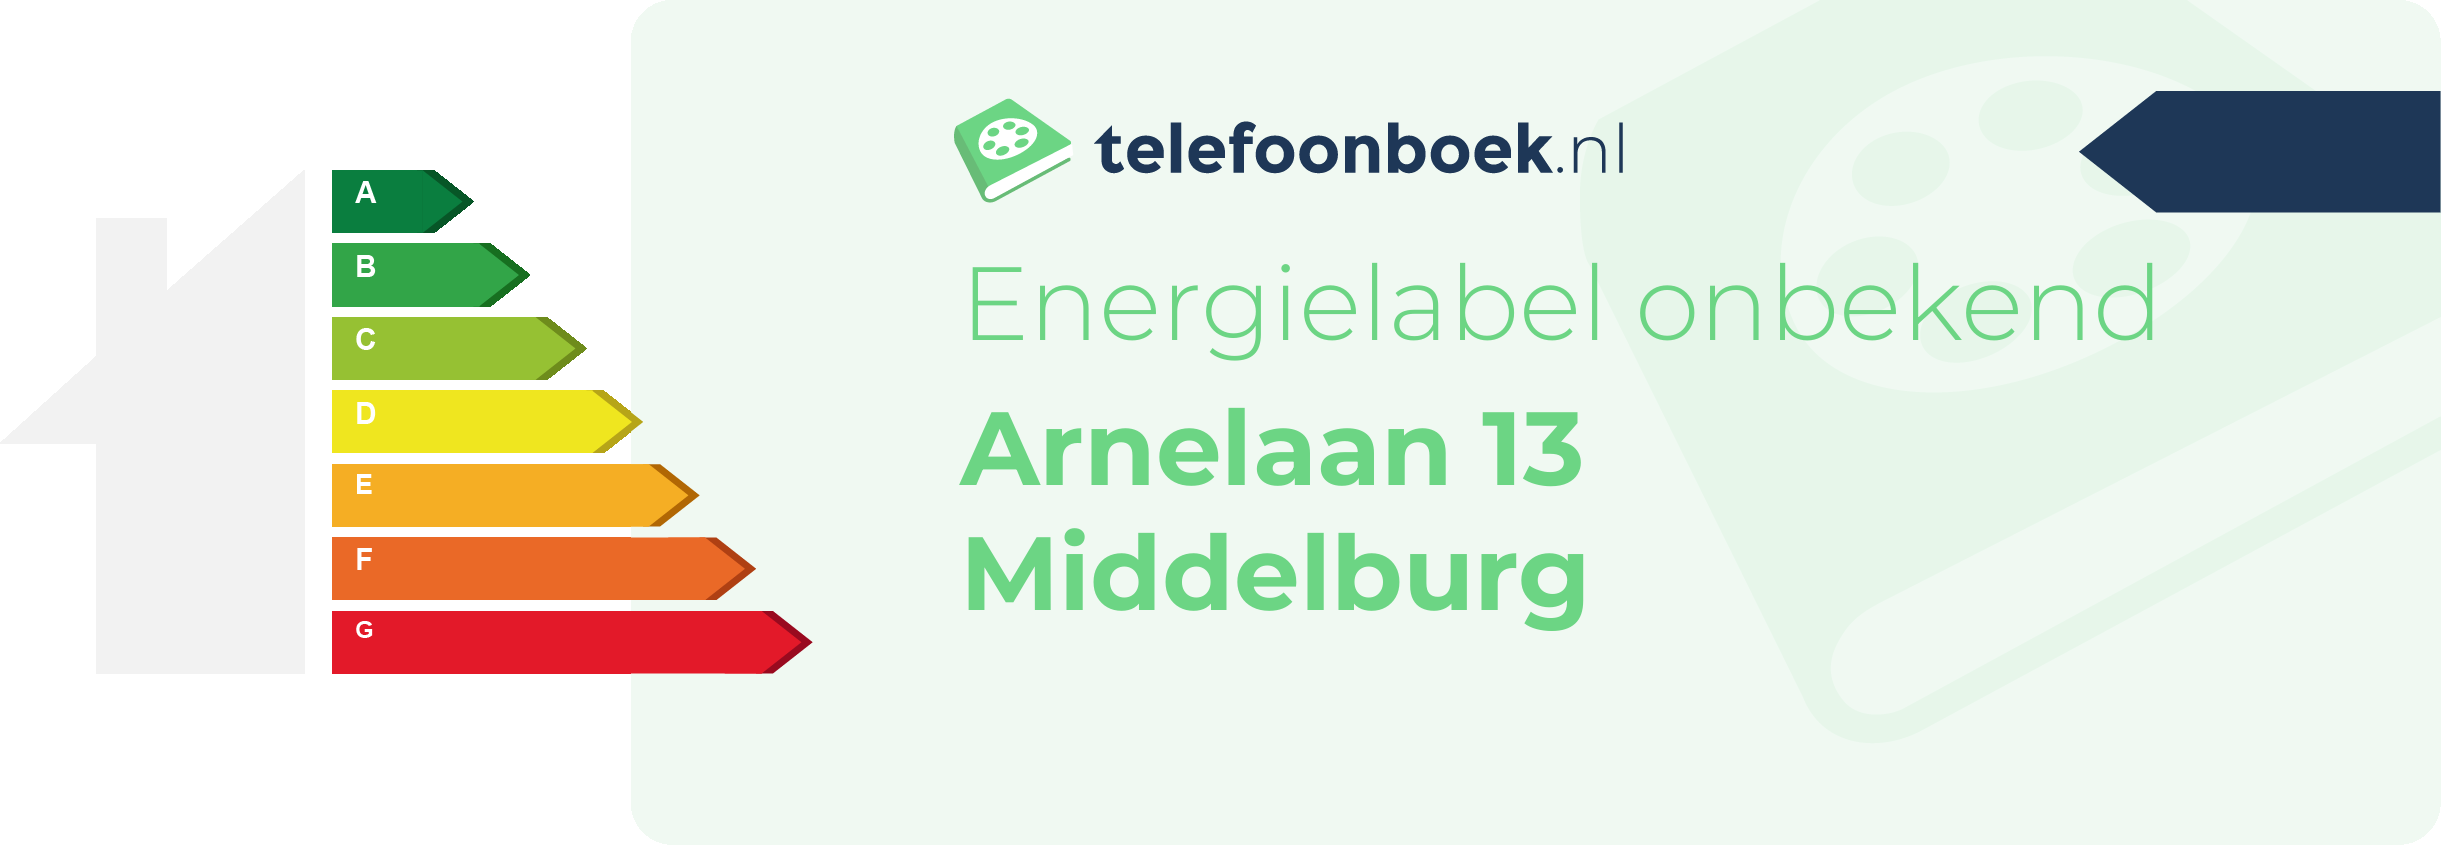 Energielabel Arnelaan 13 Middelburg